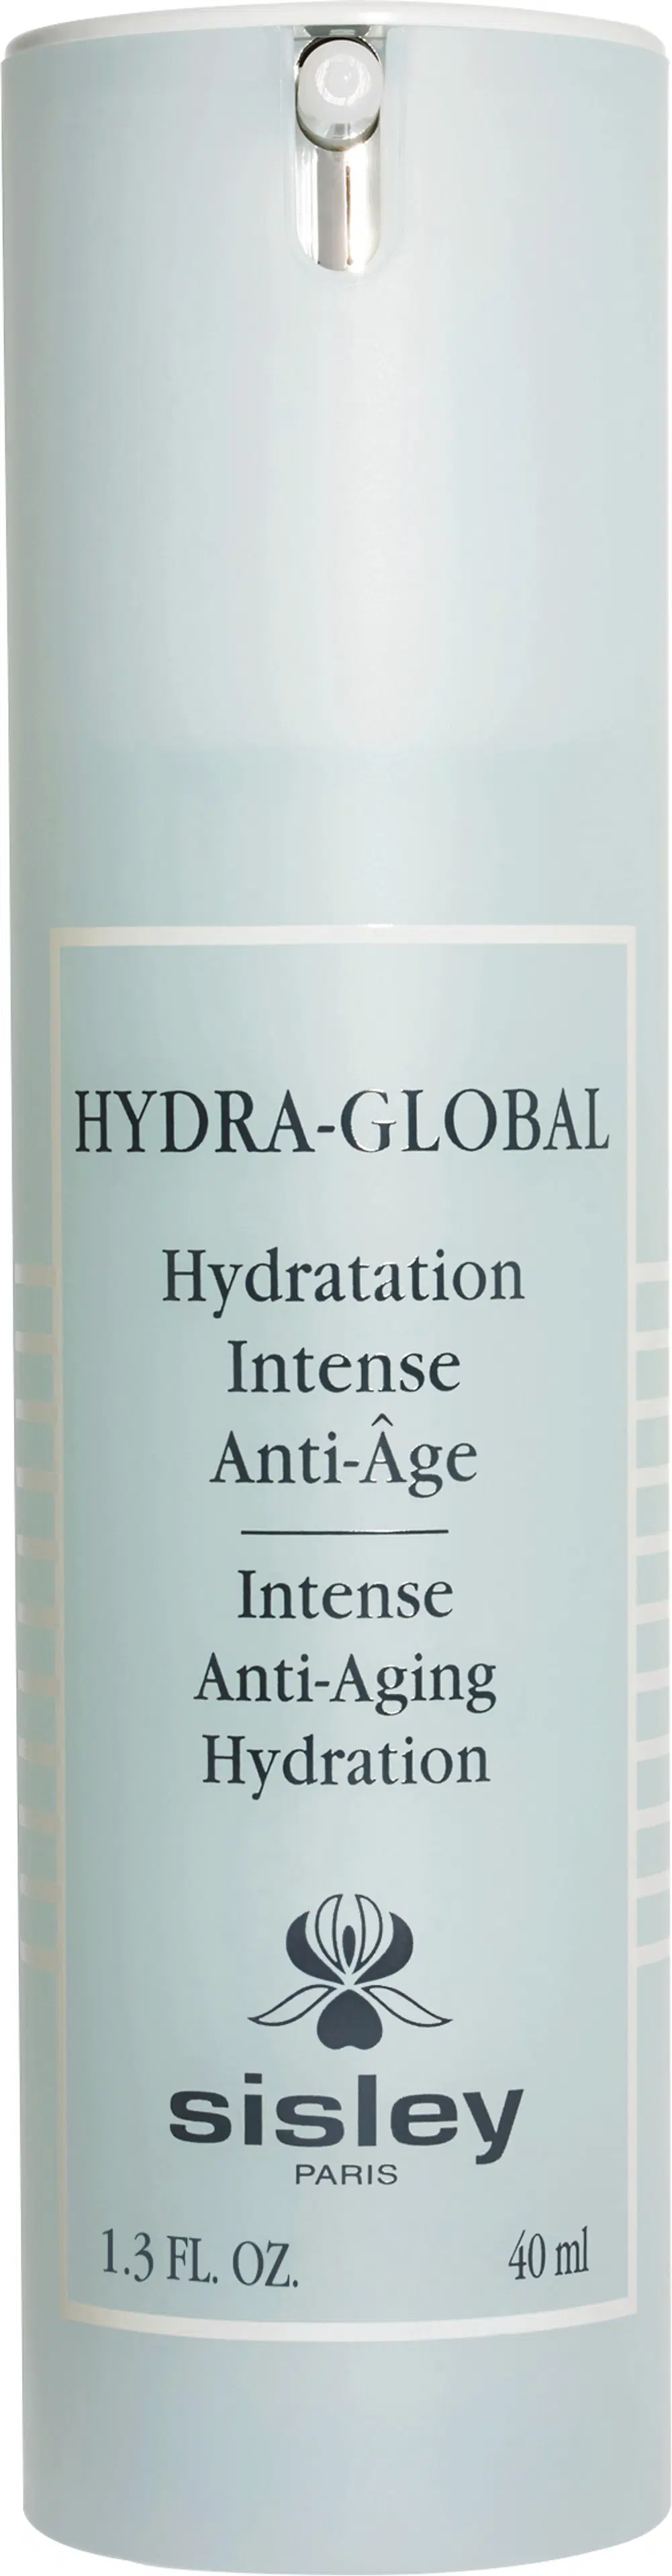 Sisley Hydra-Global Intense Anti-Aging Hydration emulsio 40 ml